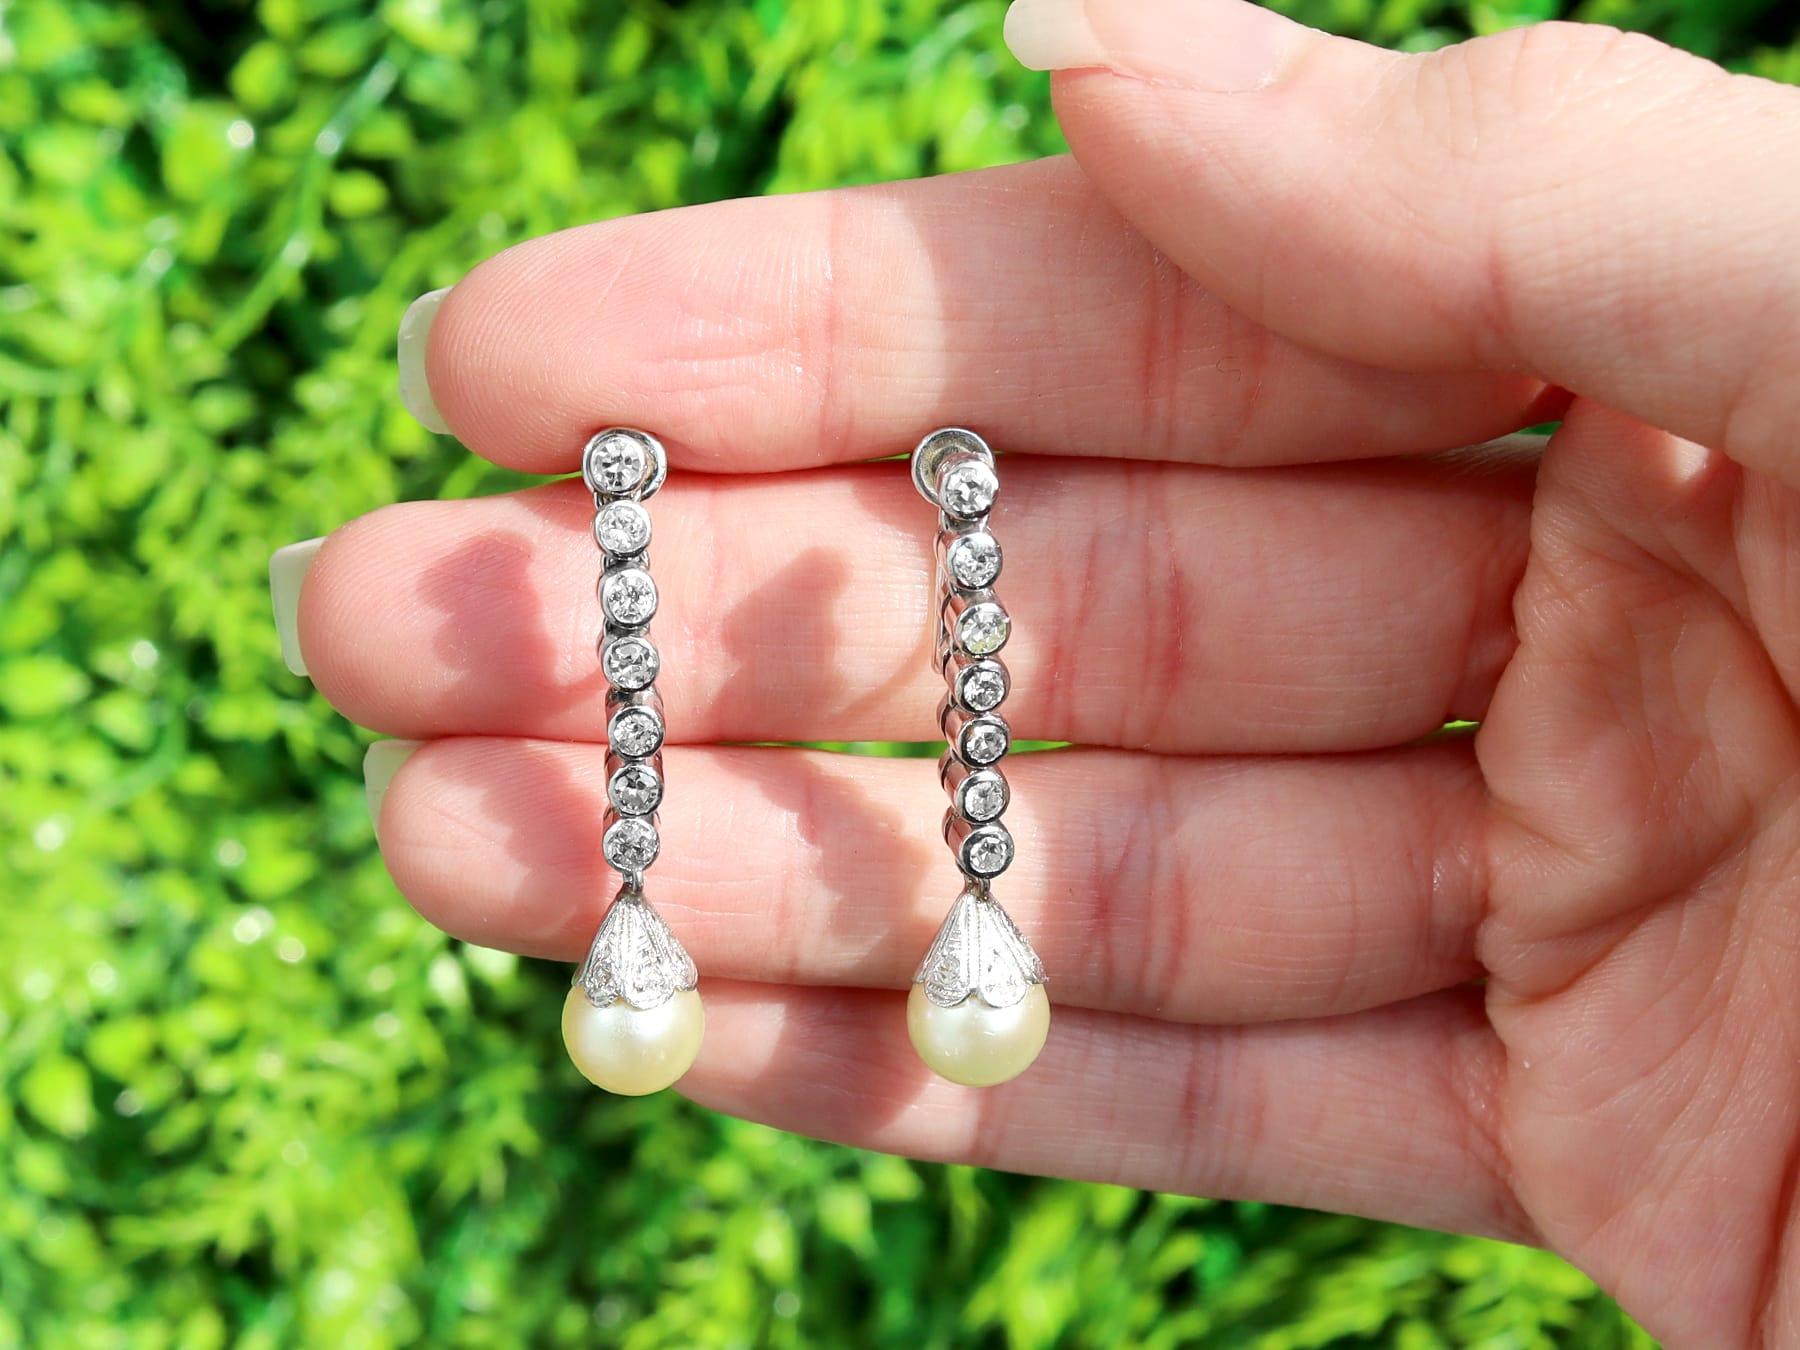 Une impressionnante paire de boucles d'oreilles pendantes en diamant de 0,70 carat et perle de culture, en platine et en or blanc 18 carats ; faisant partie de nos diverses collections de bijoux de succession en perles.

Ces boucles d'oreilles en